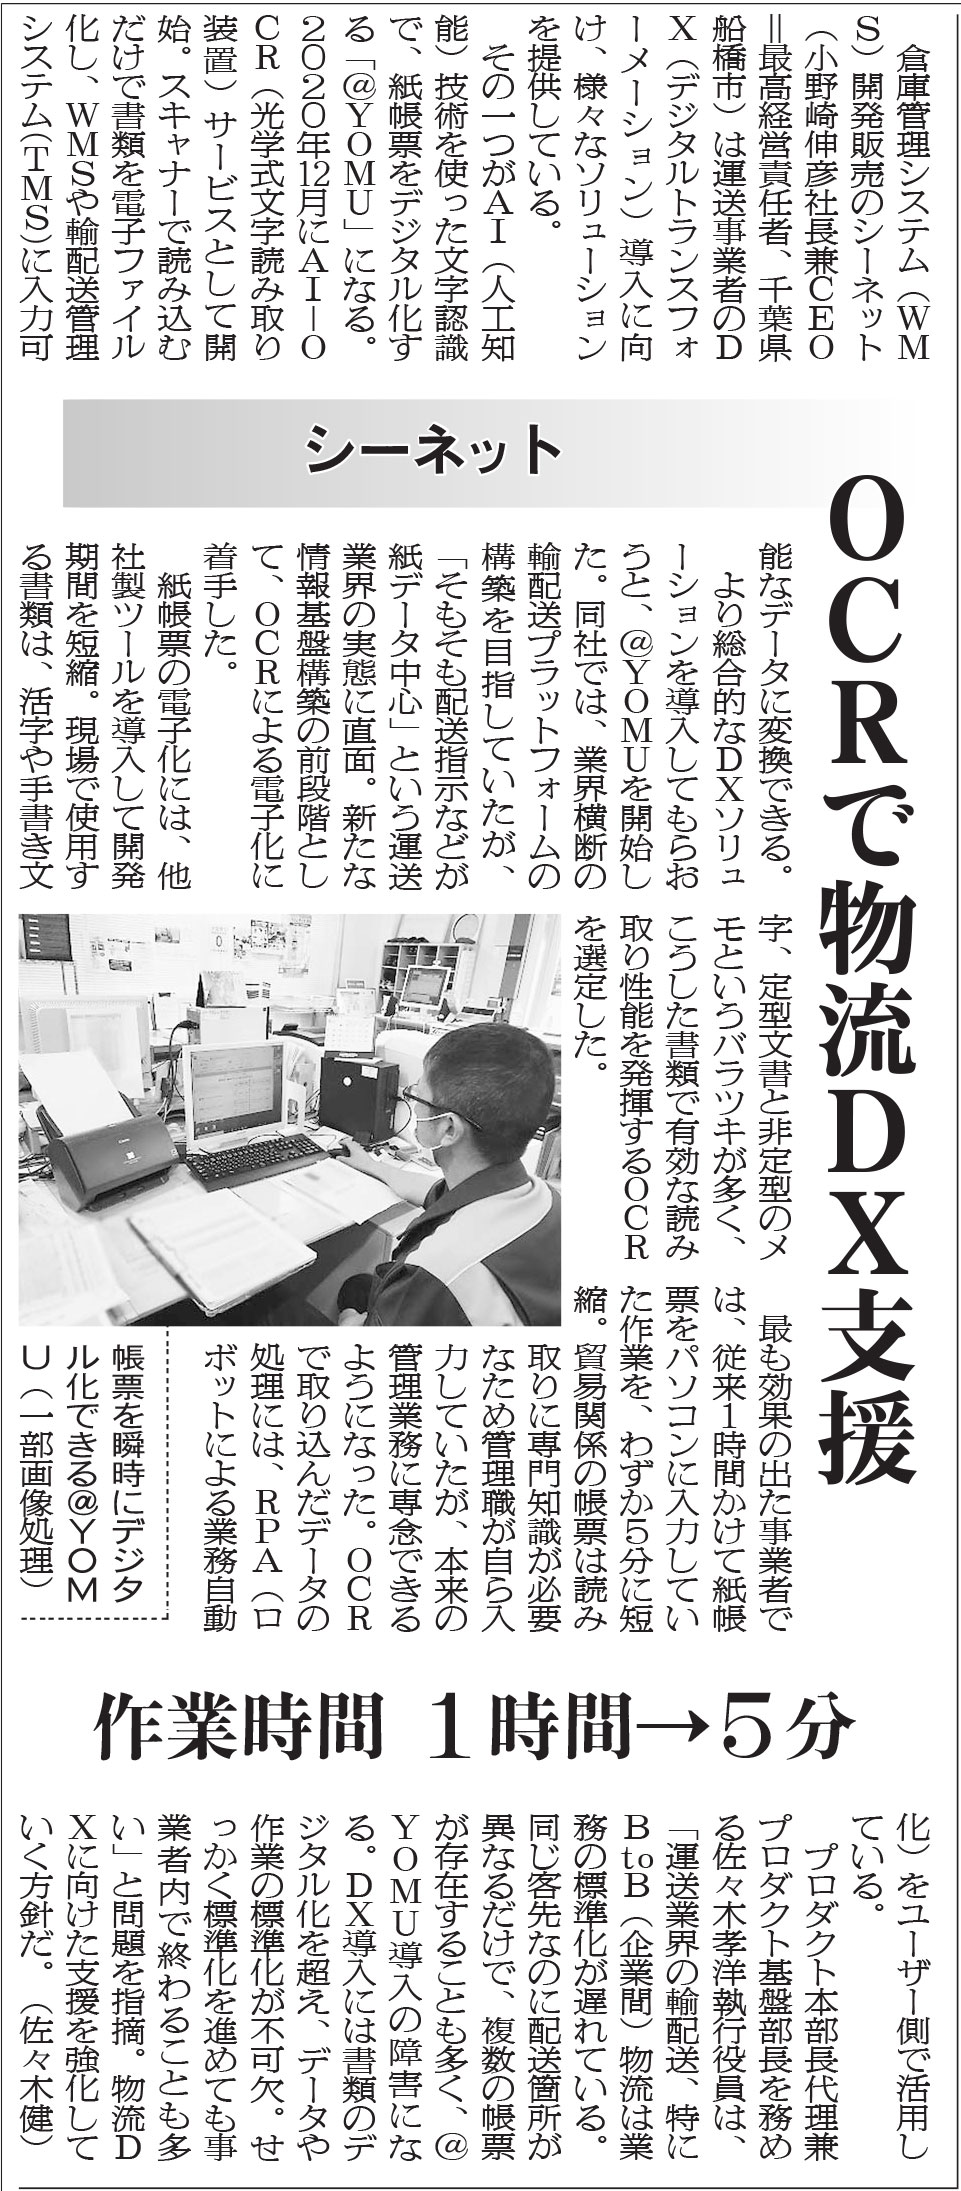 物流ニッポンにシーネットのAI-OCRが取材され掲載されました。